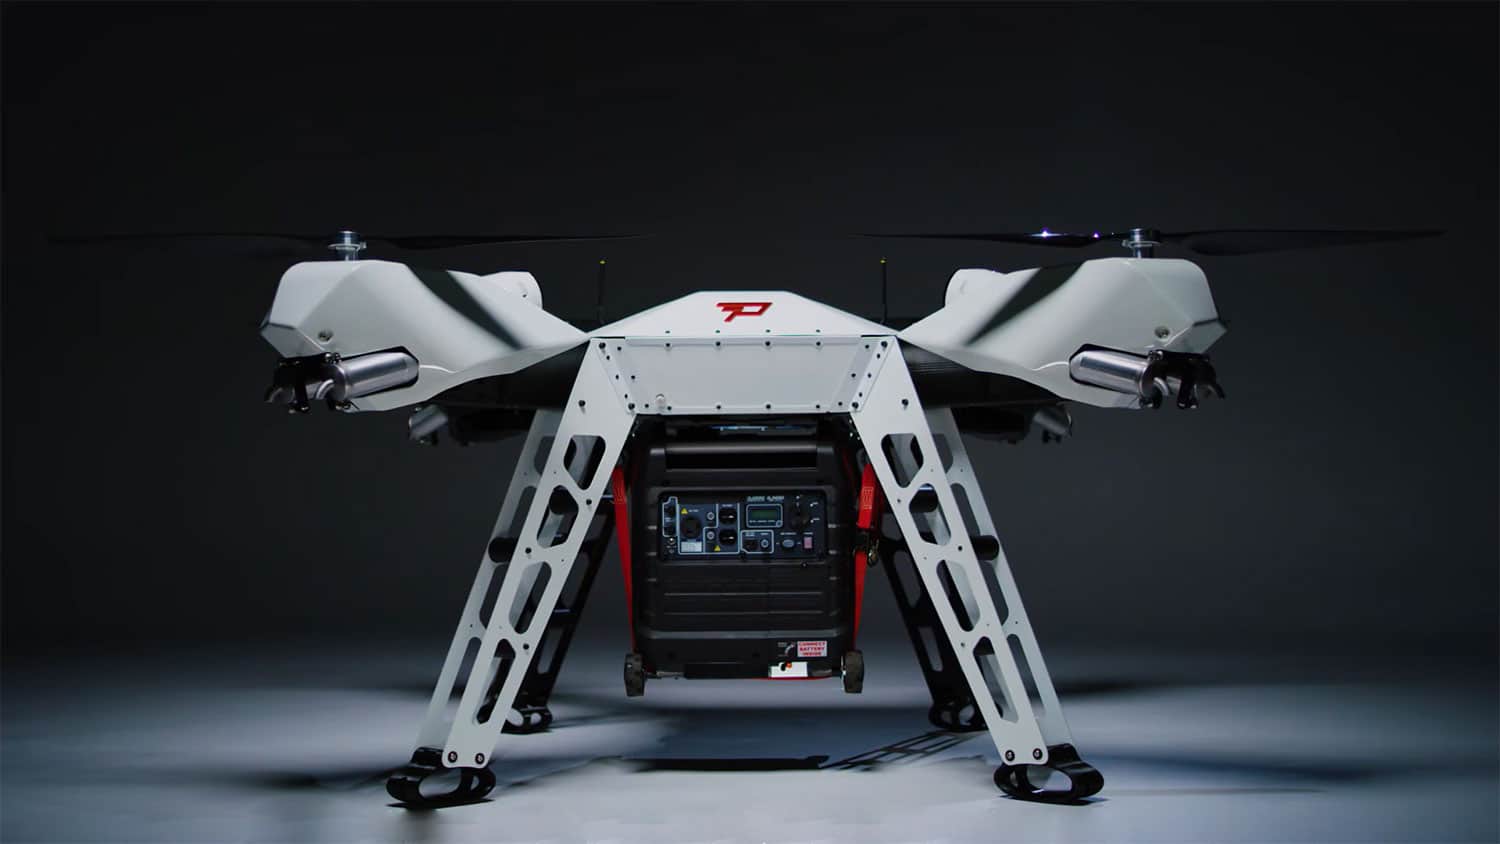 Firefly heavy-lift drone rats